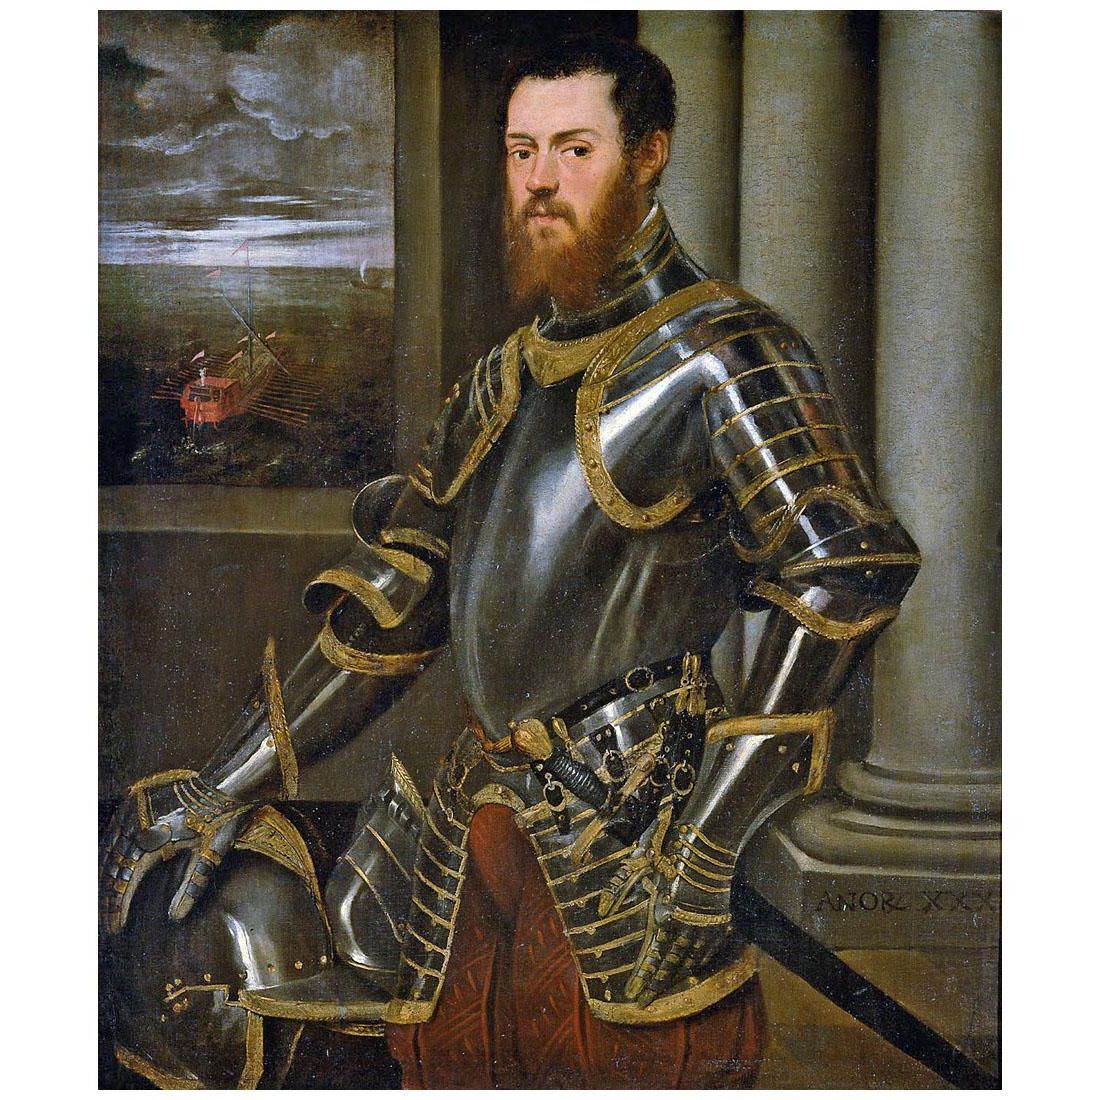 Tintoretto. Ritratto di un uomo in armature. 1555-1560. KHM, Wien